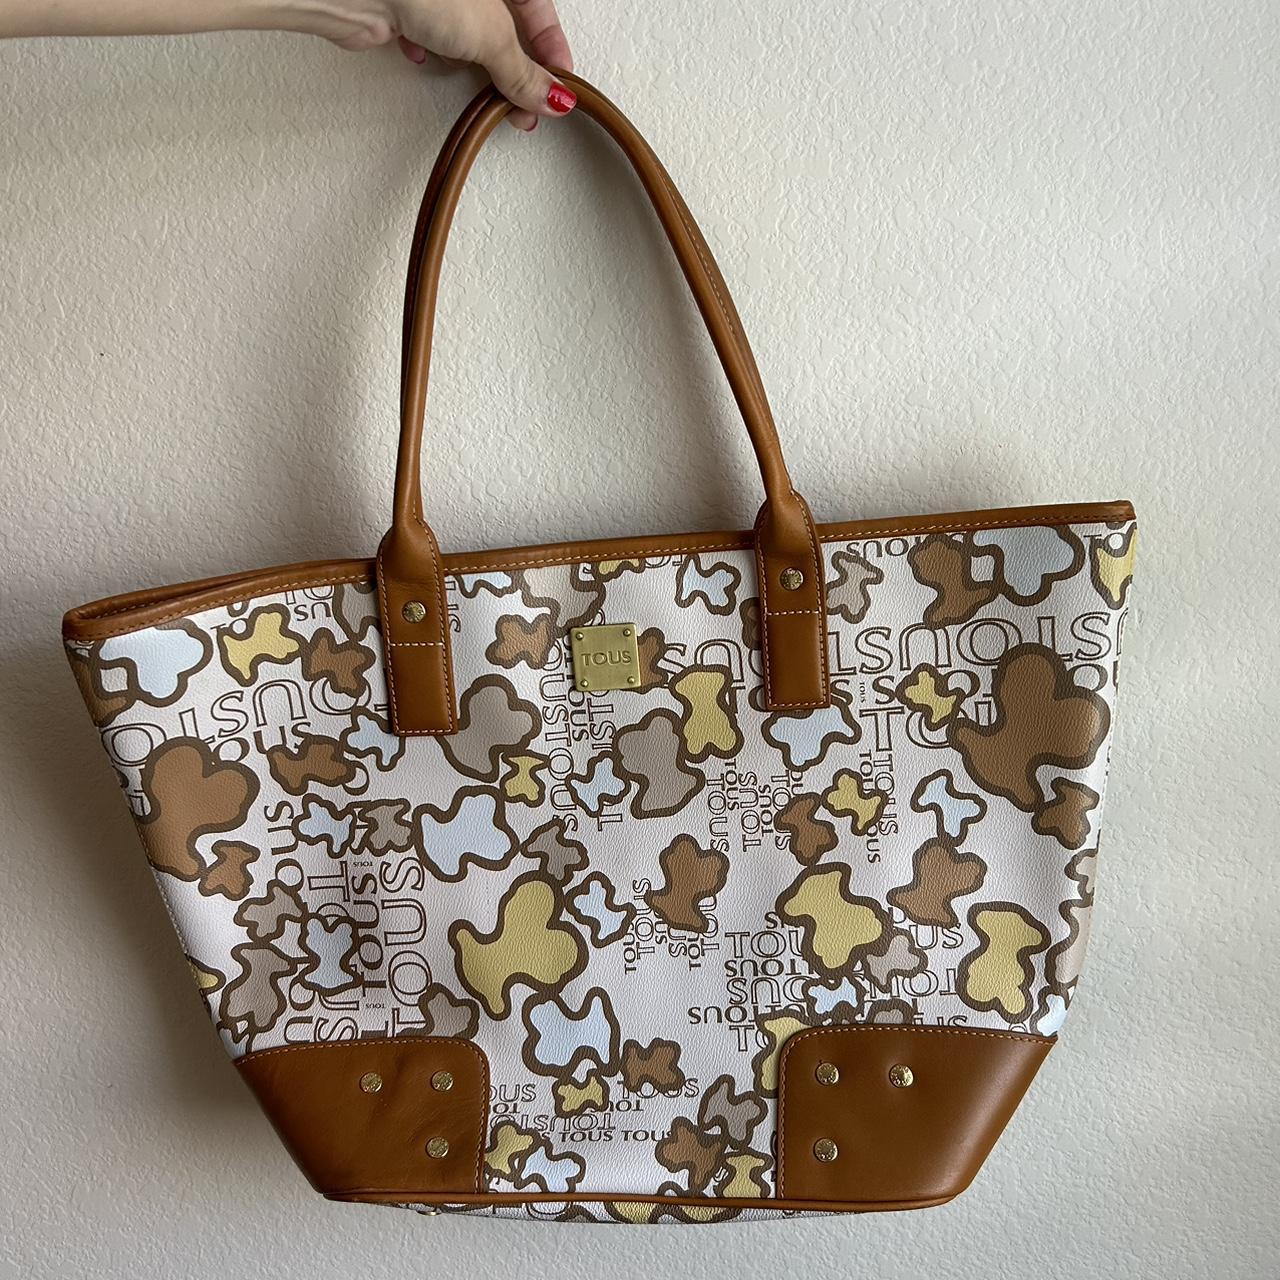 Michael Kors Morgan Signature Medium Brown Tote Bag Handbag | eBay